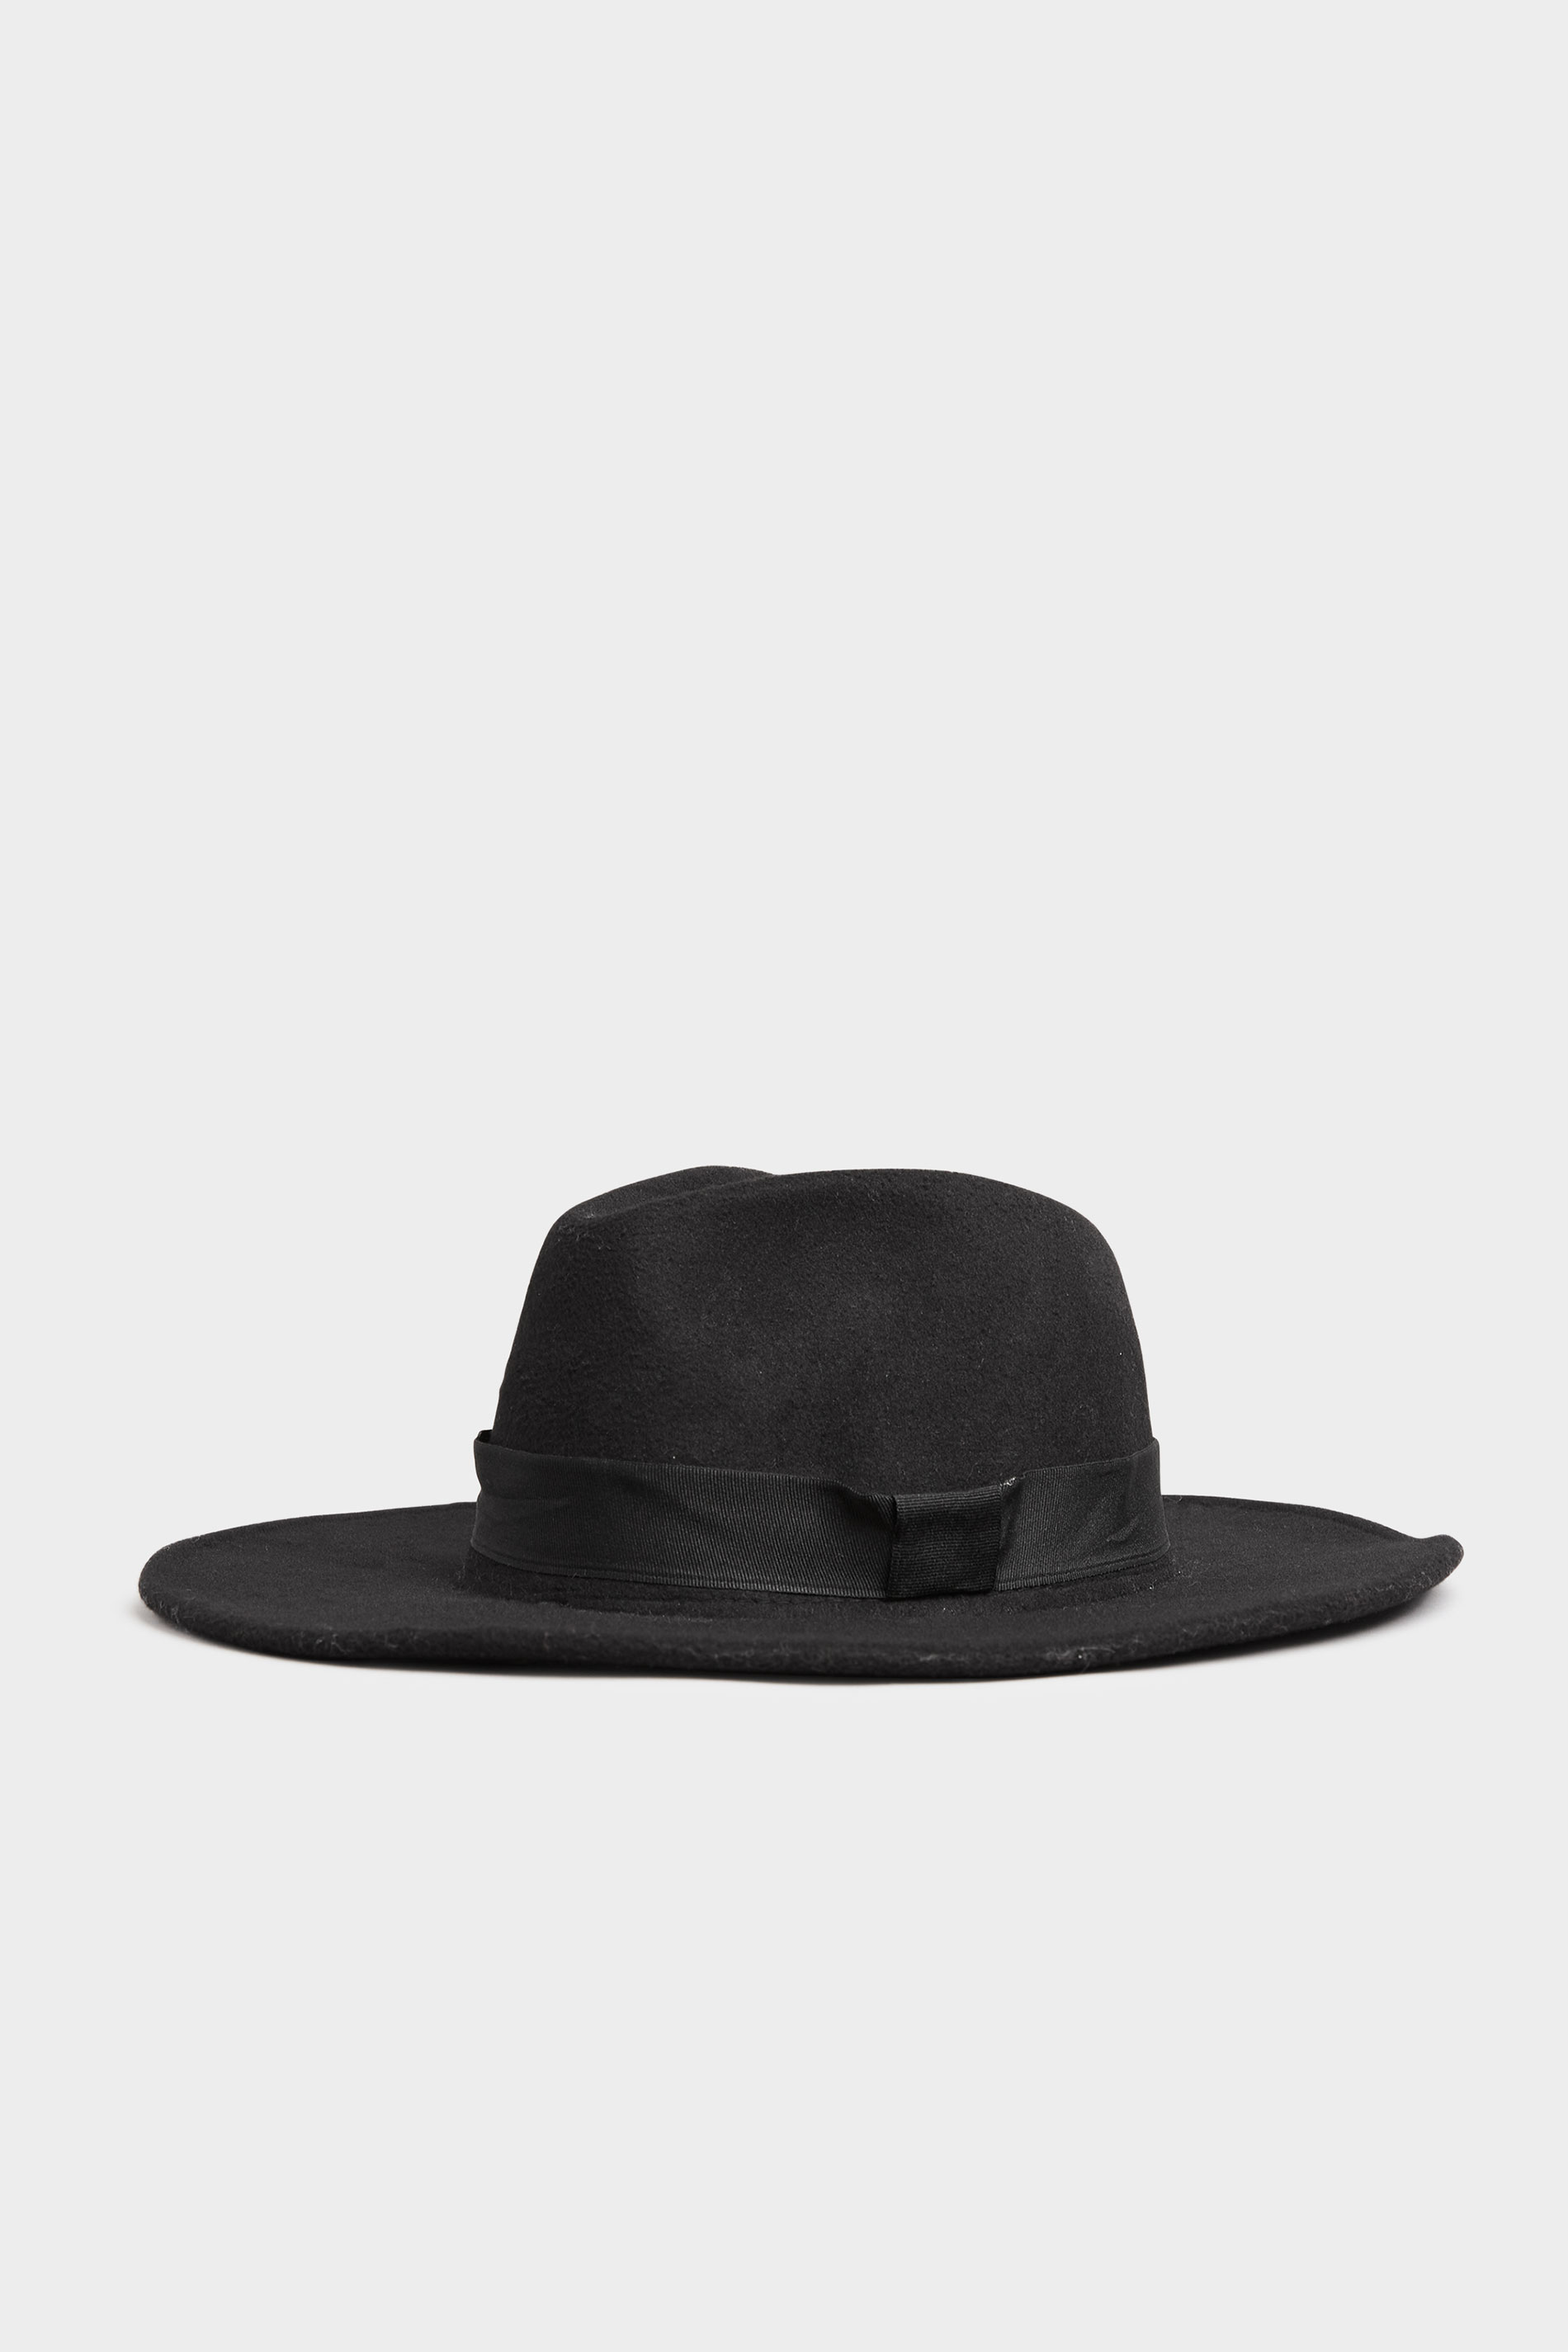 Black Fedora Hat | Yours Clothing 2